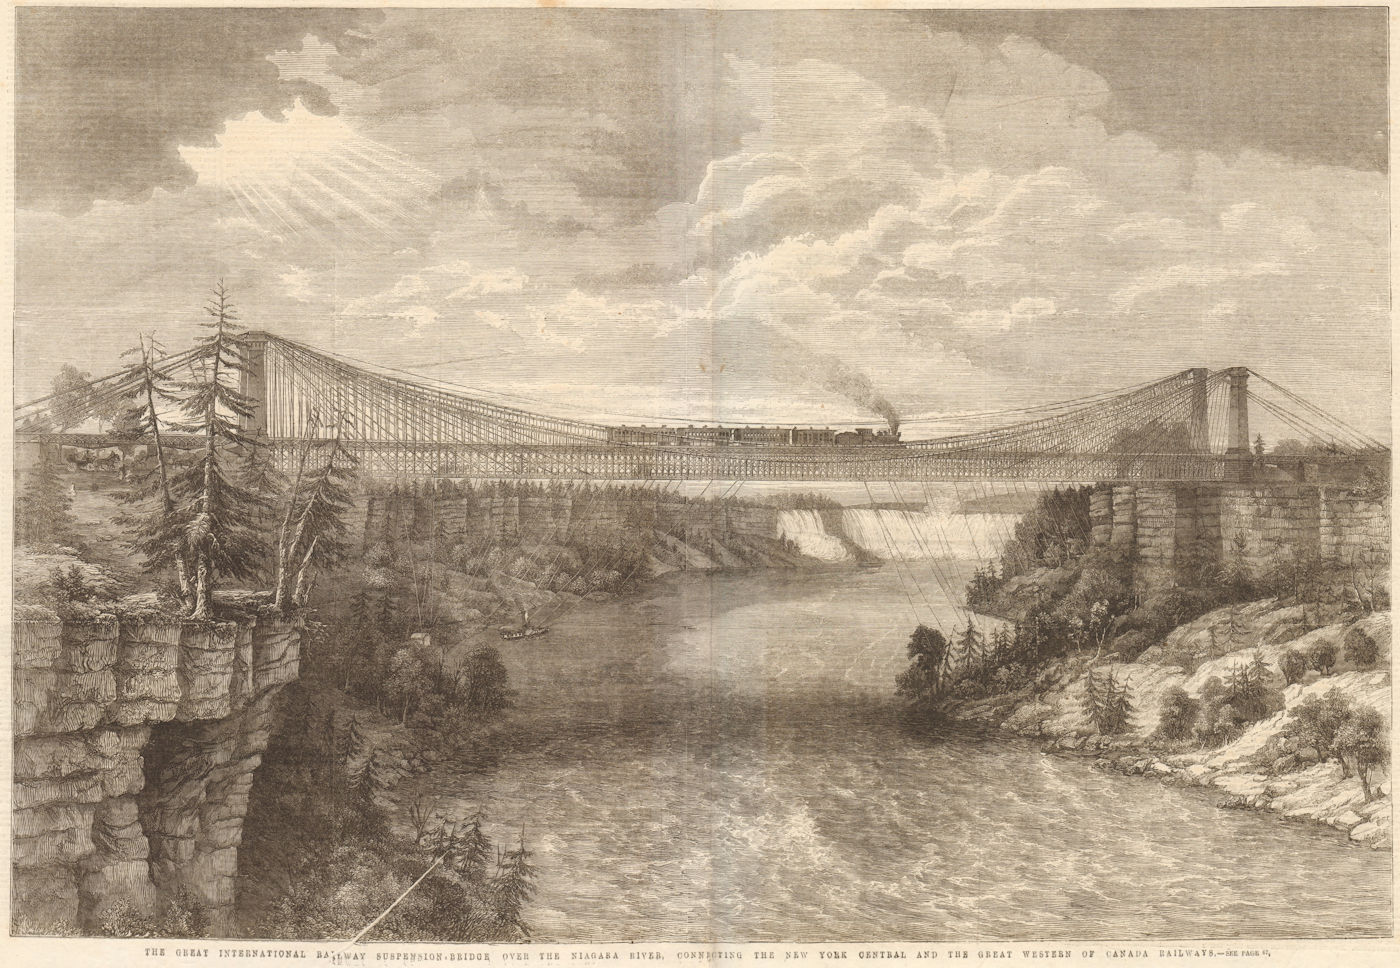 Niagara River suspension bridge. NY Central & Great Western Canada Railway 1862